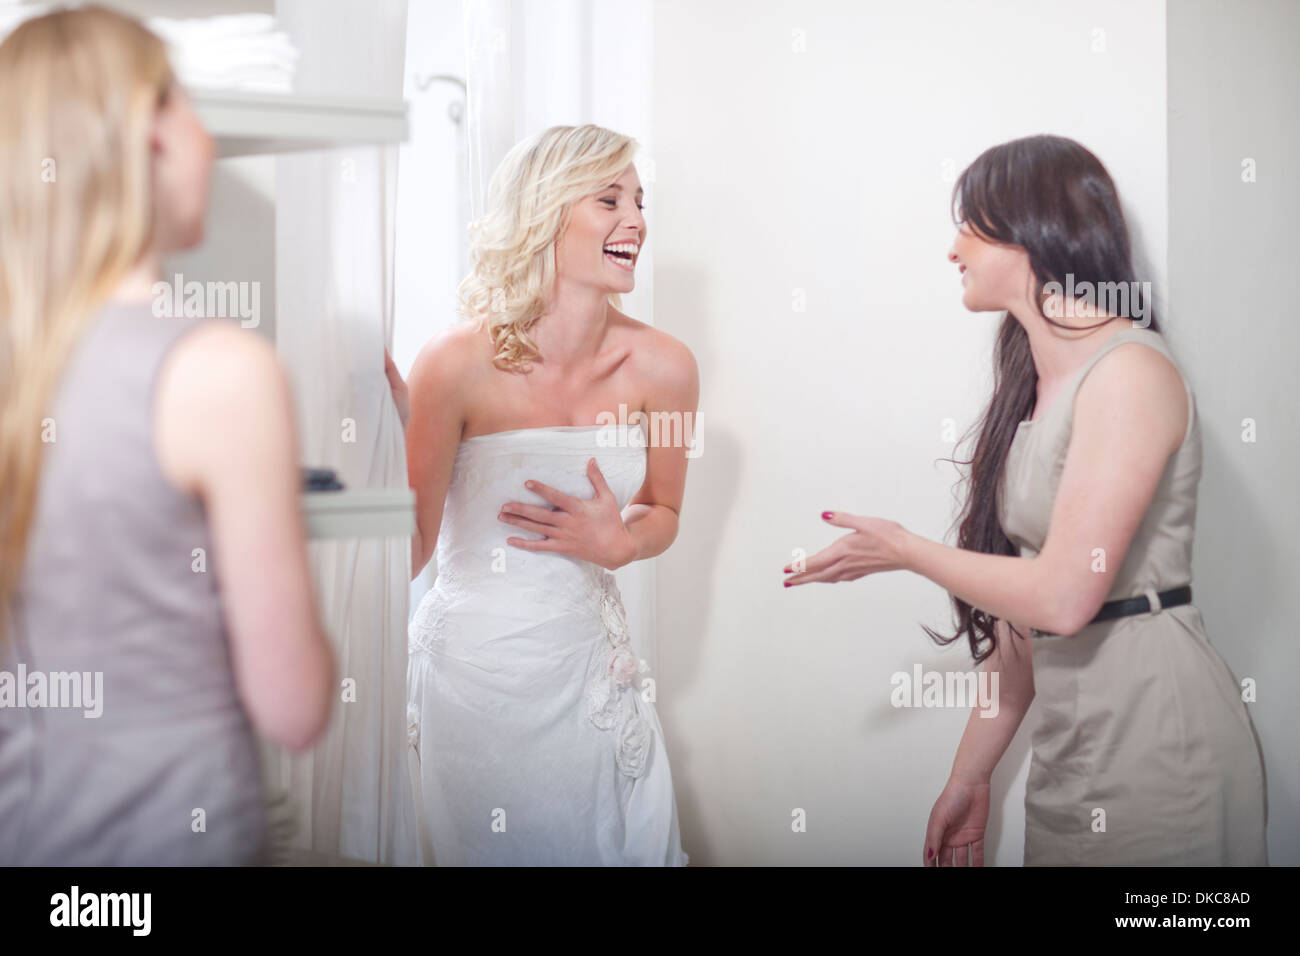 Junge Frau, die versucht auf Hochzeitskleid, mit Freunden Stockfoto